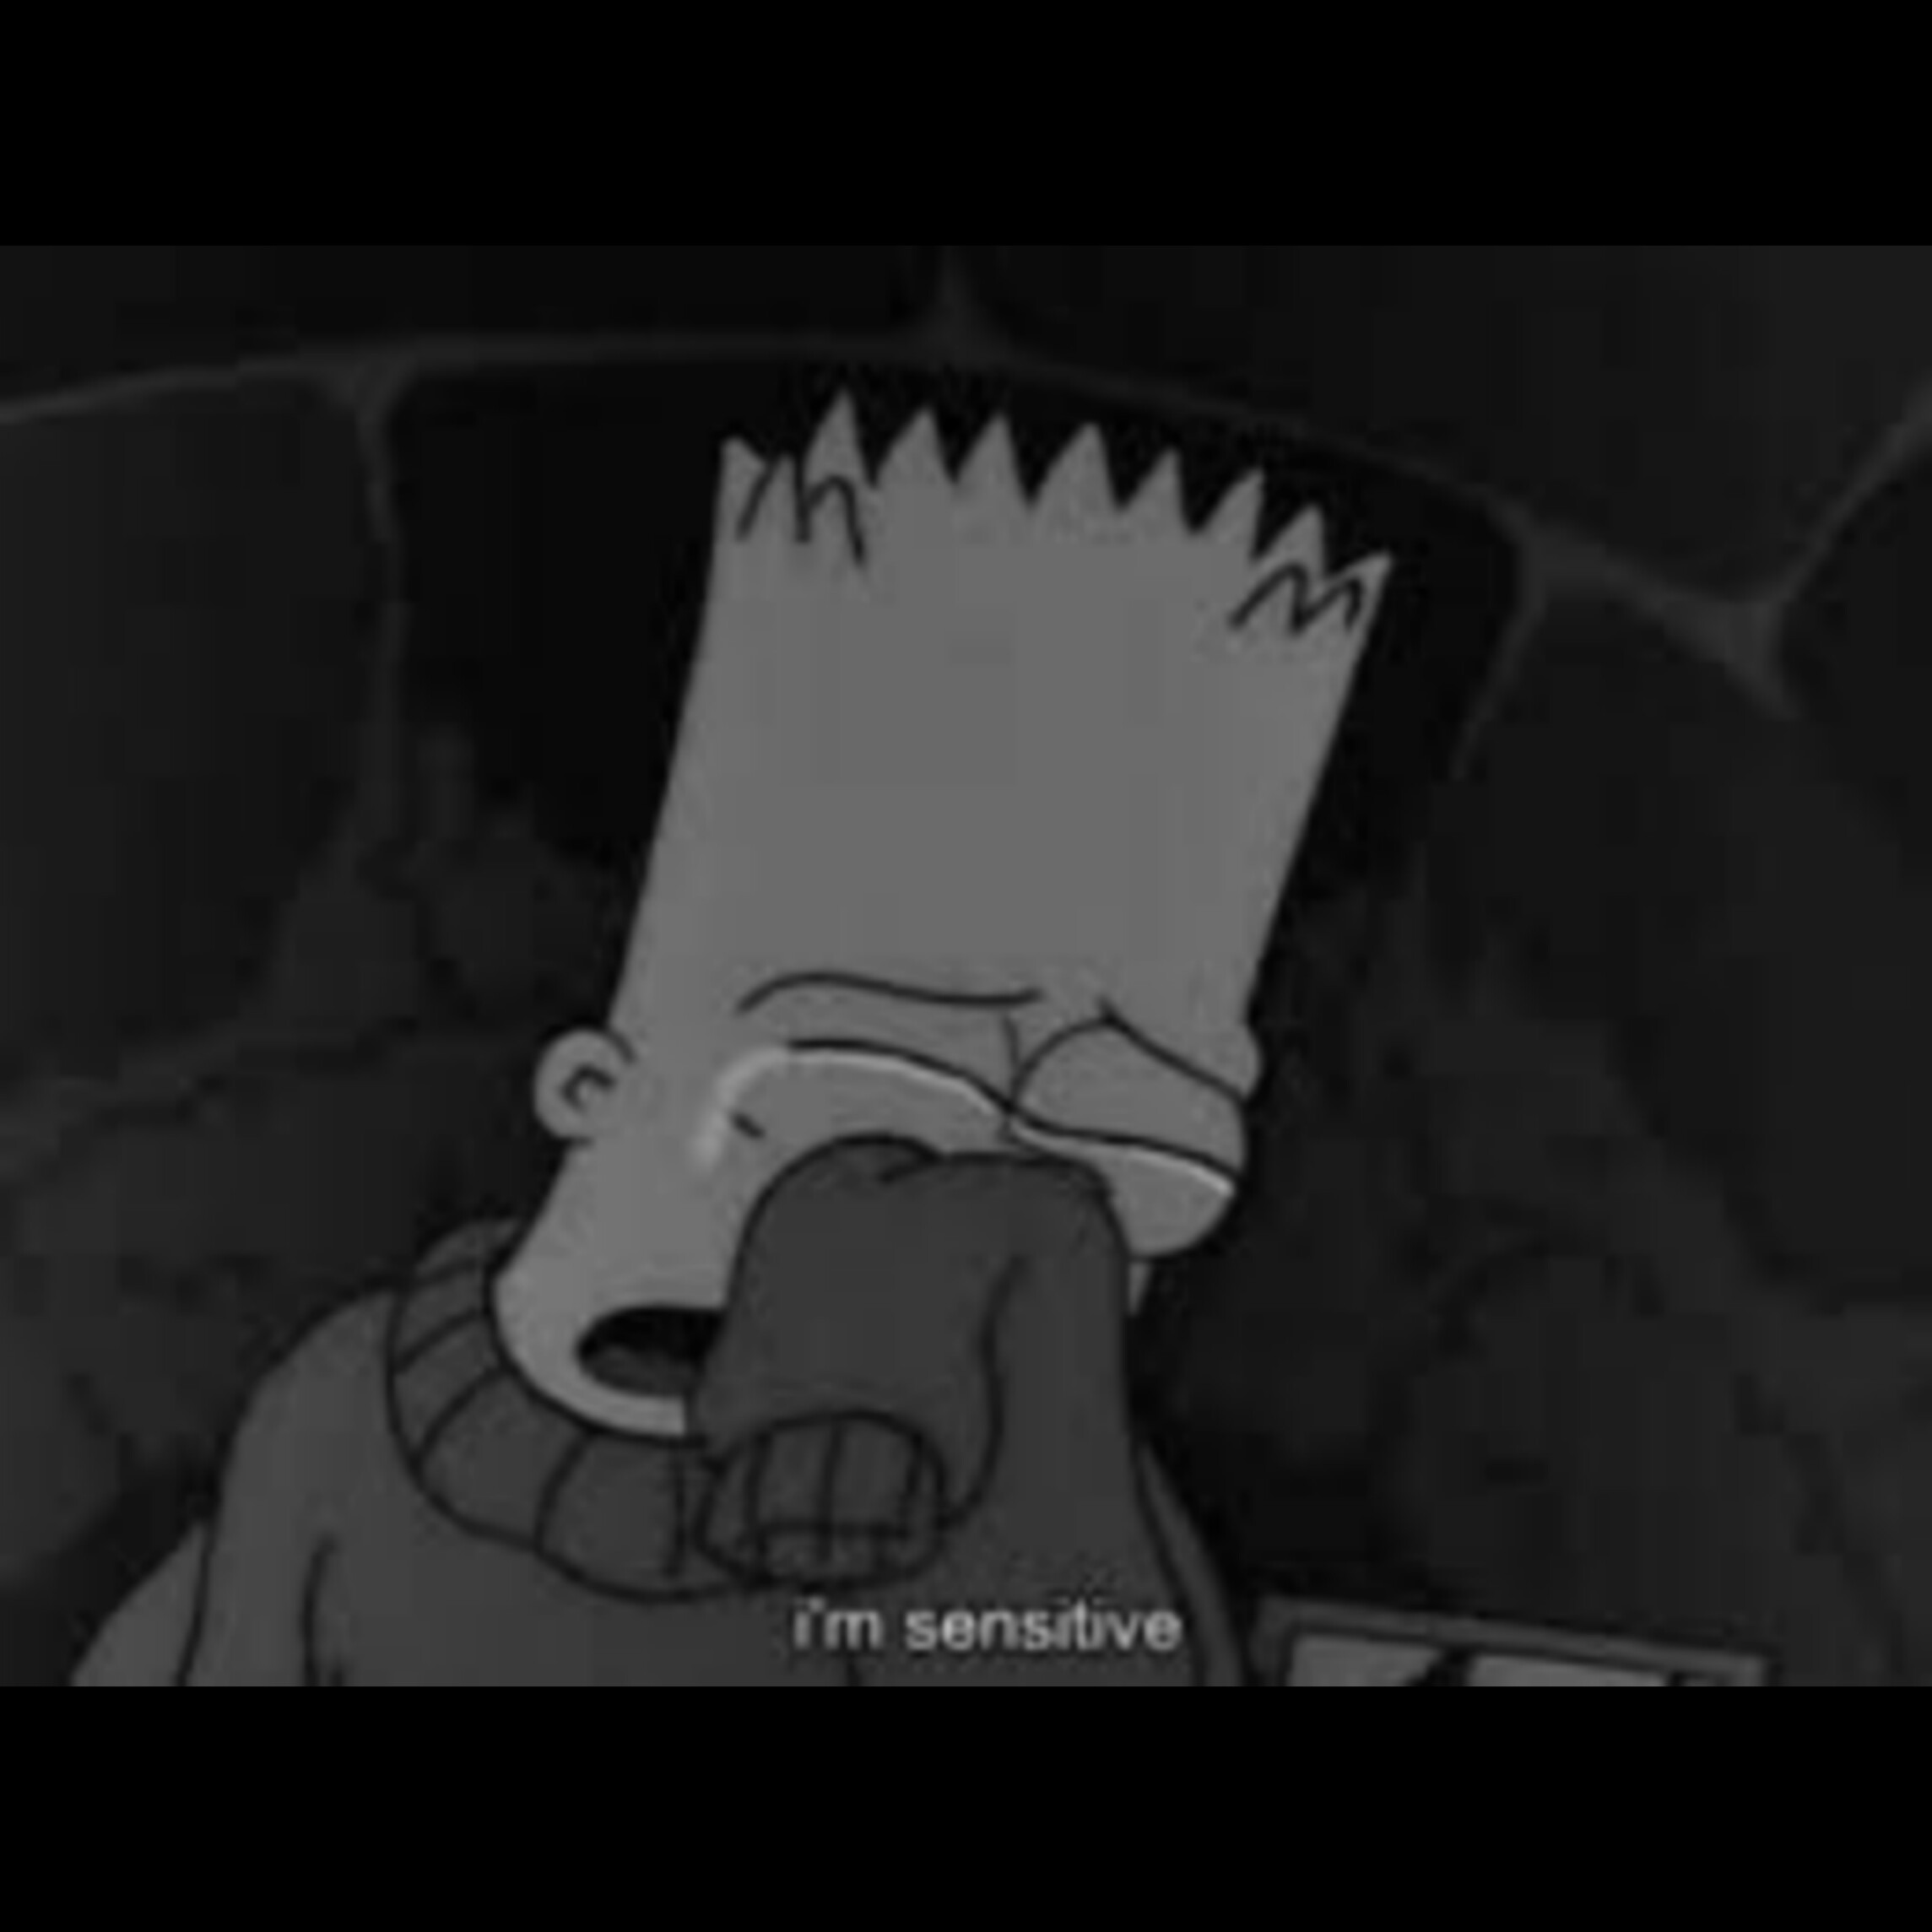 Simpsons Sad Die Depression Image By Hang Lu